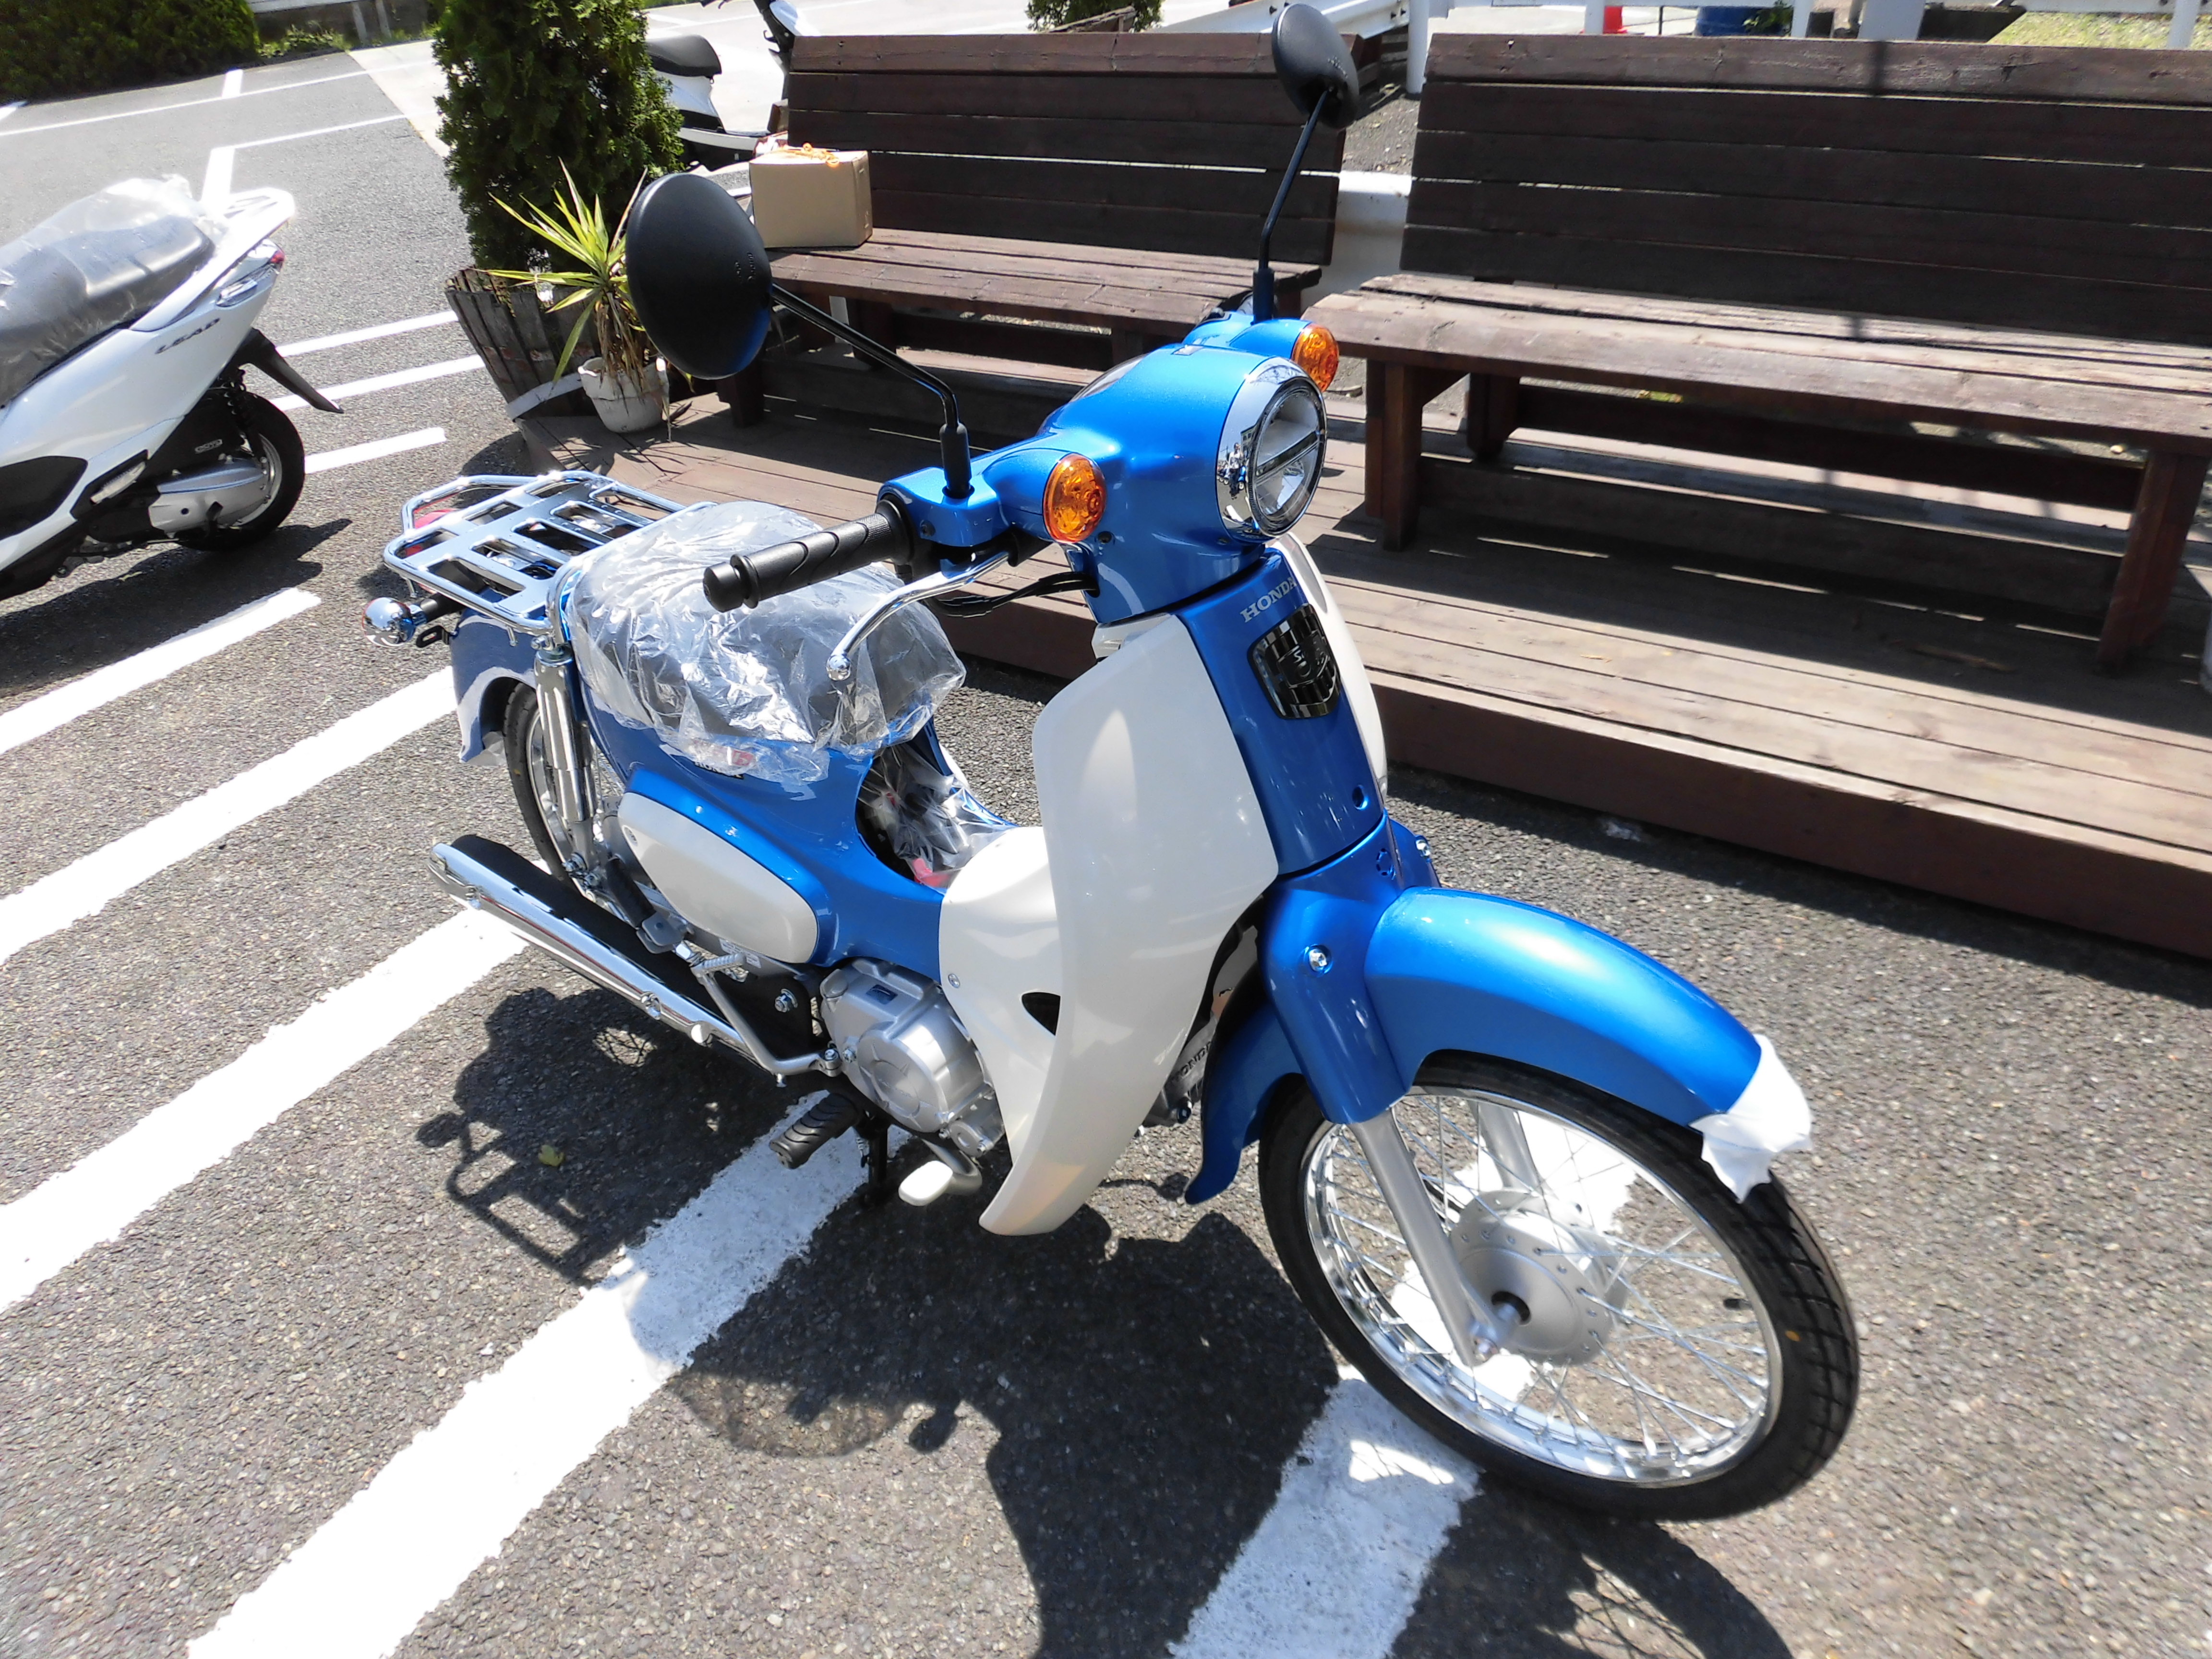 スーパーカブ110入庫しました 最新情報 U Media ユーメディア 中古バイク 新車バイク探しの決定版 神奈川 東京でバイク探すならユーメディア